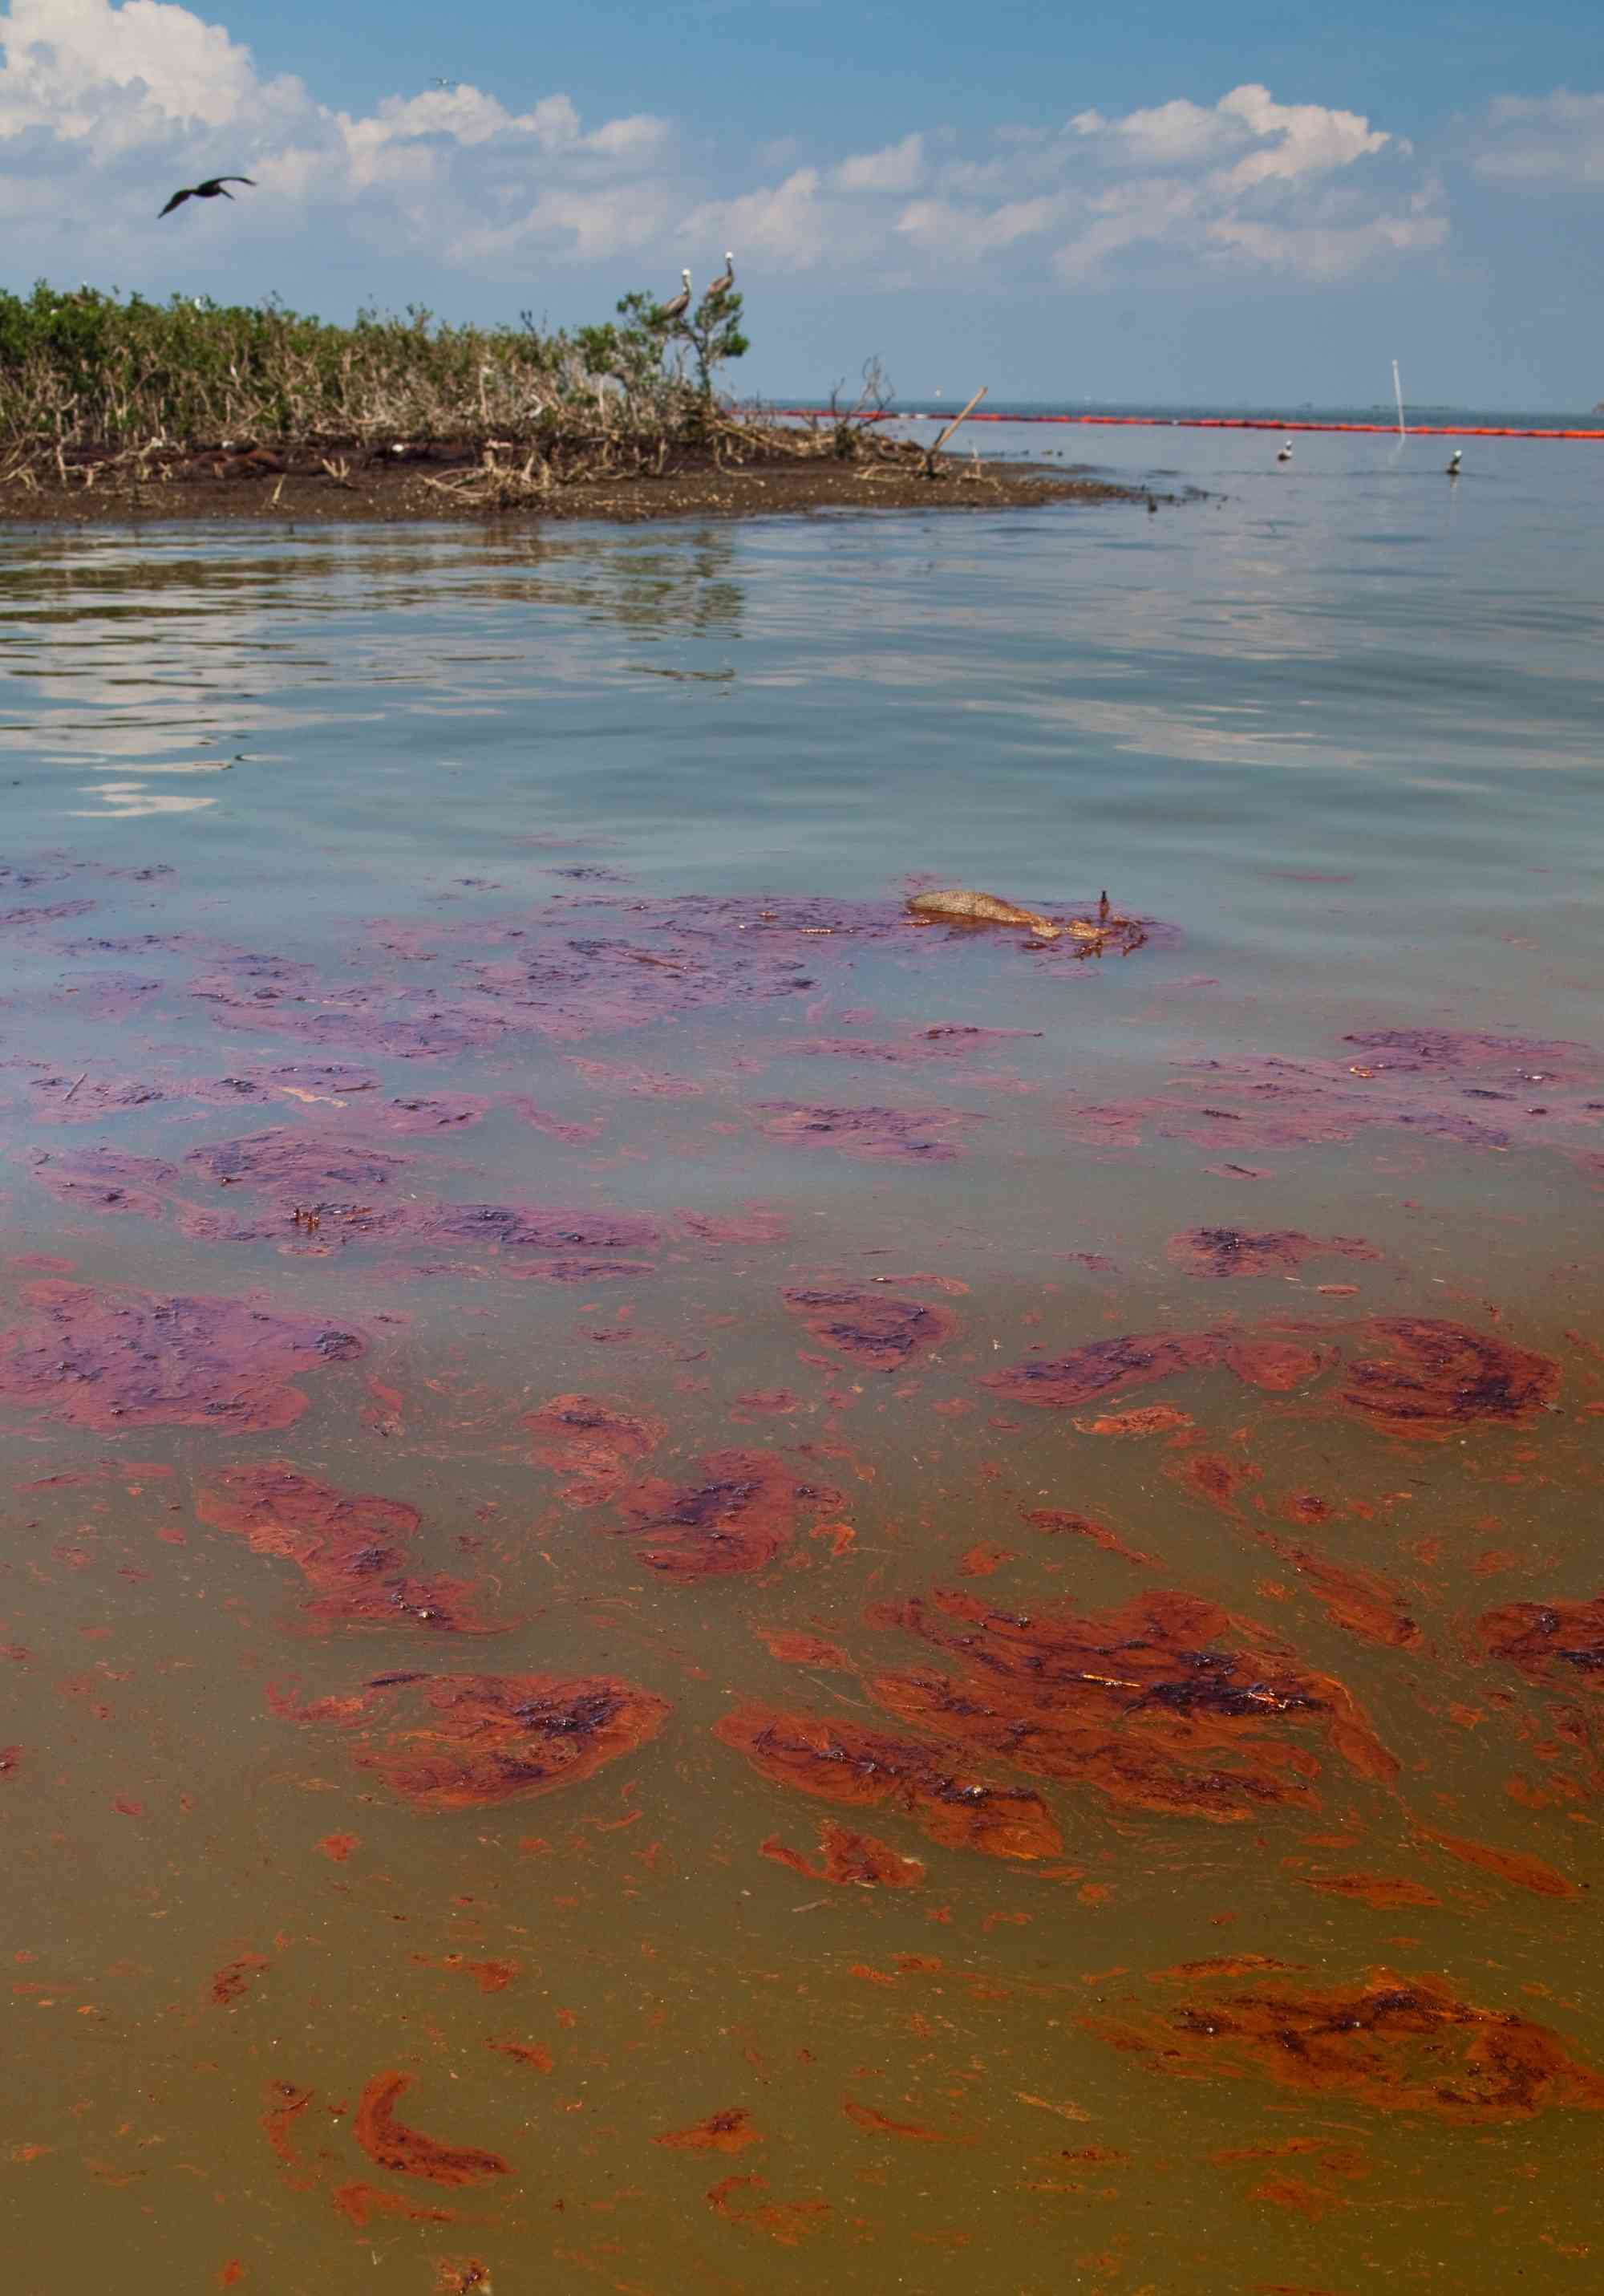 Gulf June 2010 after BP oil spill